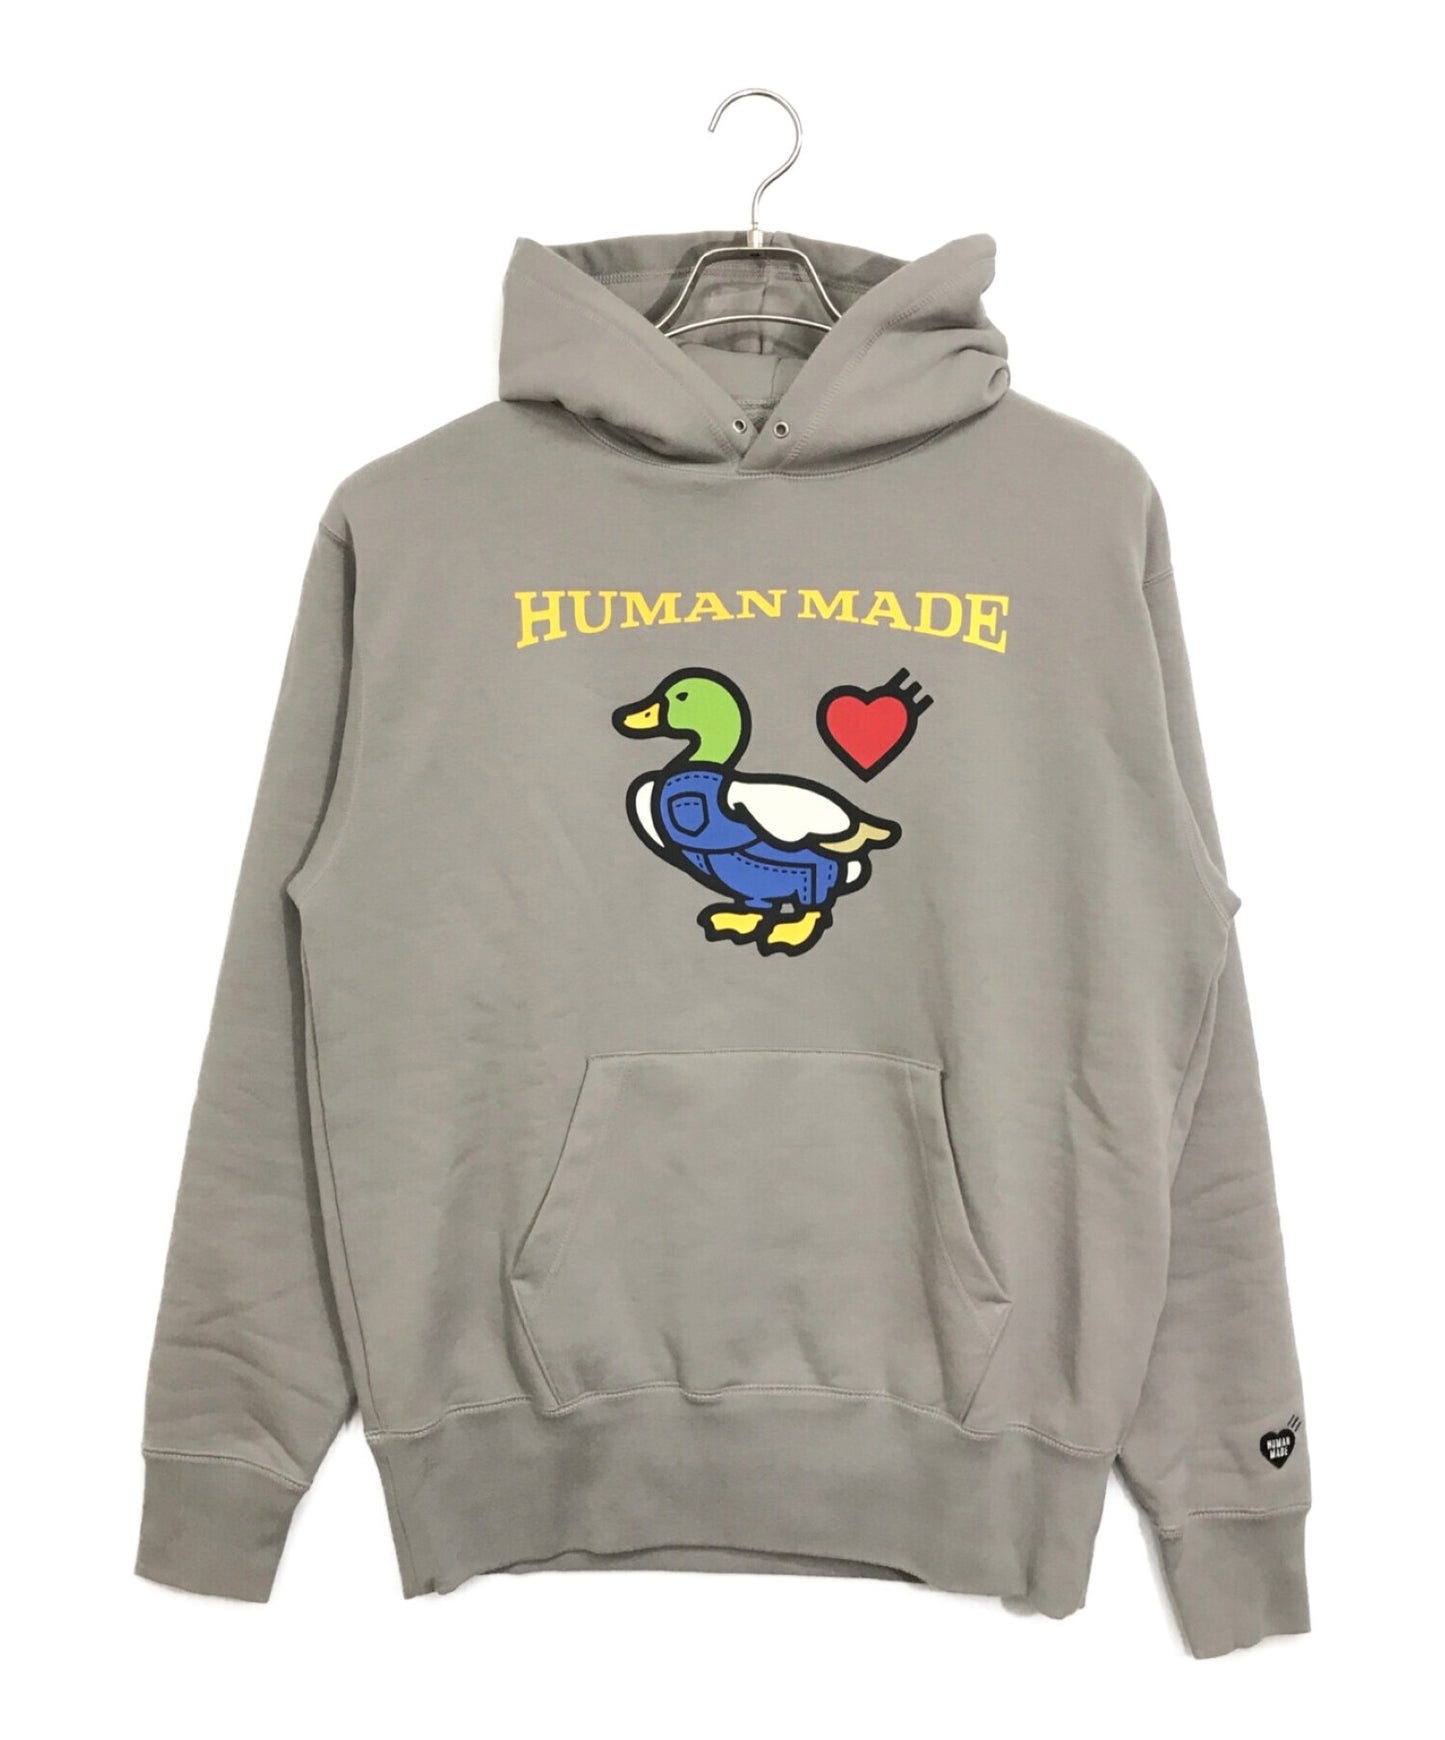 Human Made Made Hoodie / hoodie เป็ด